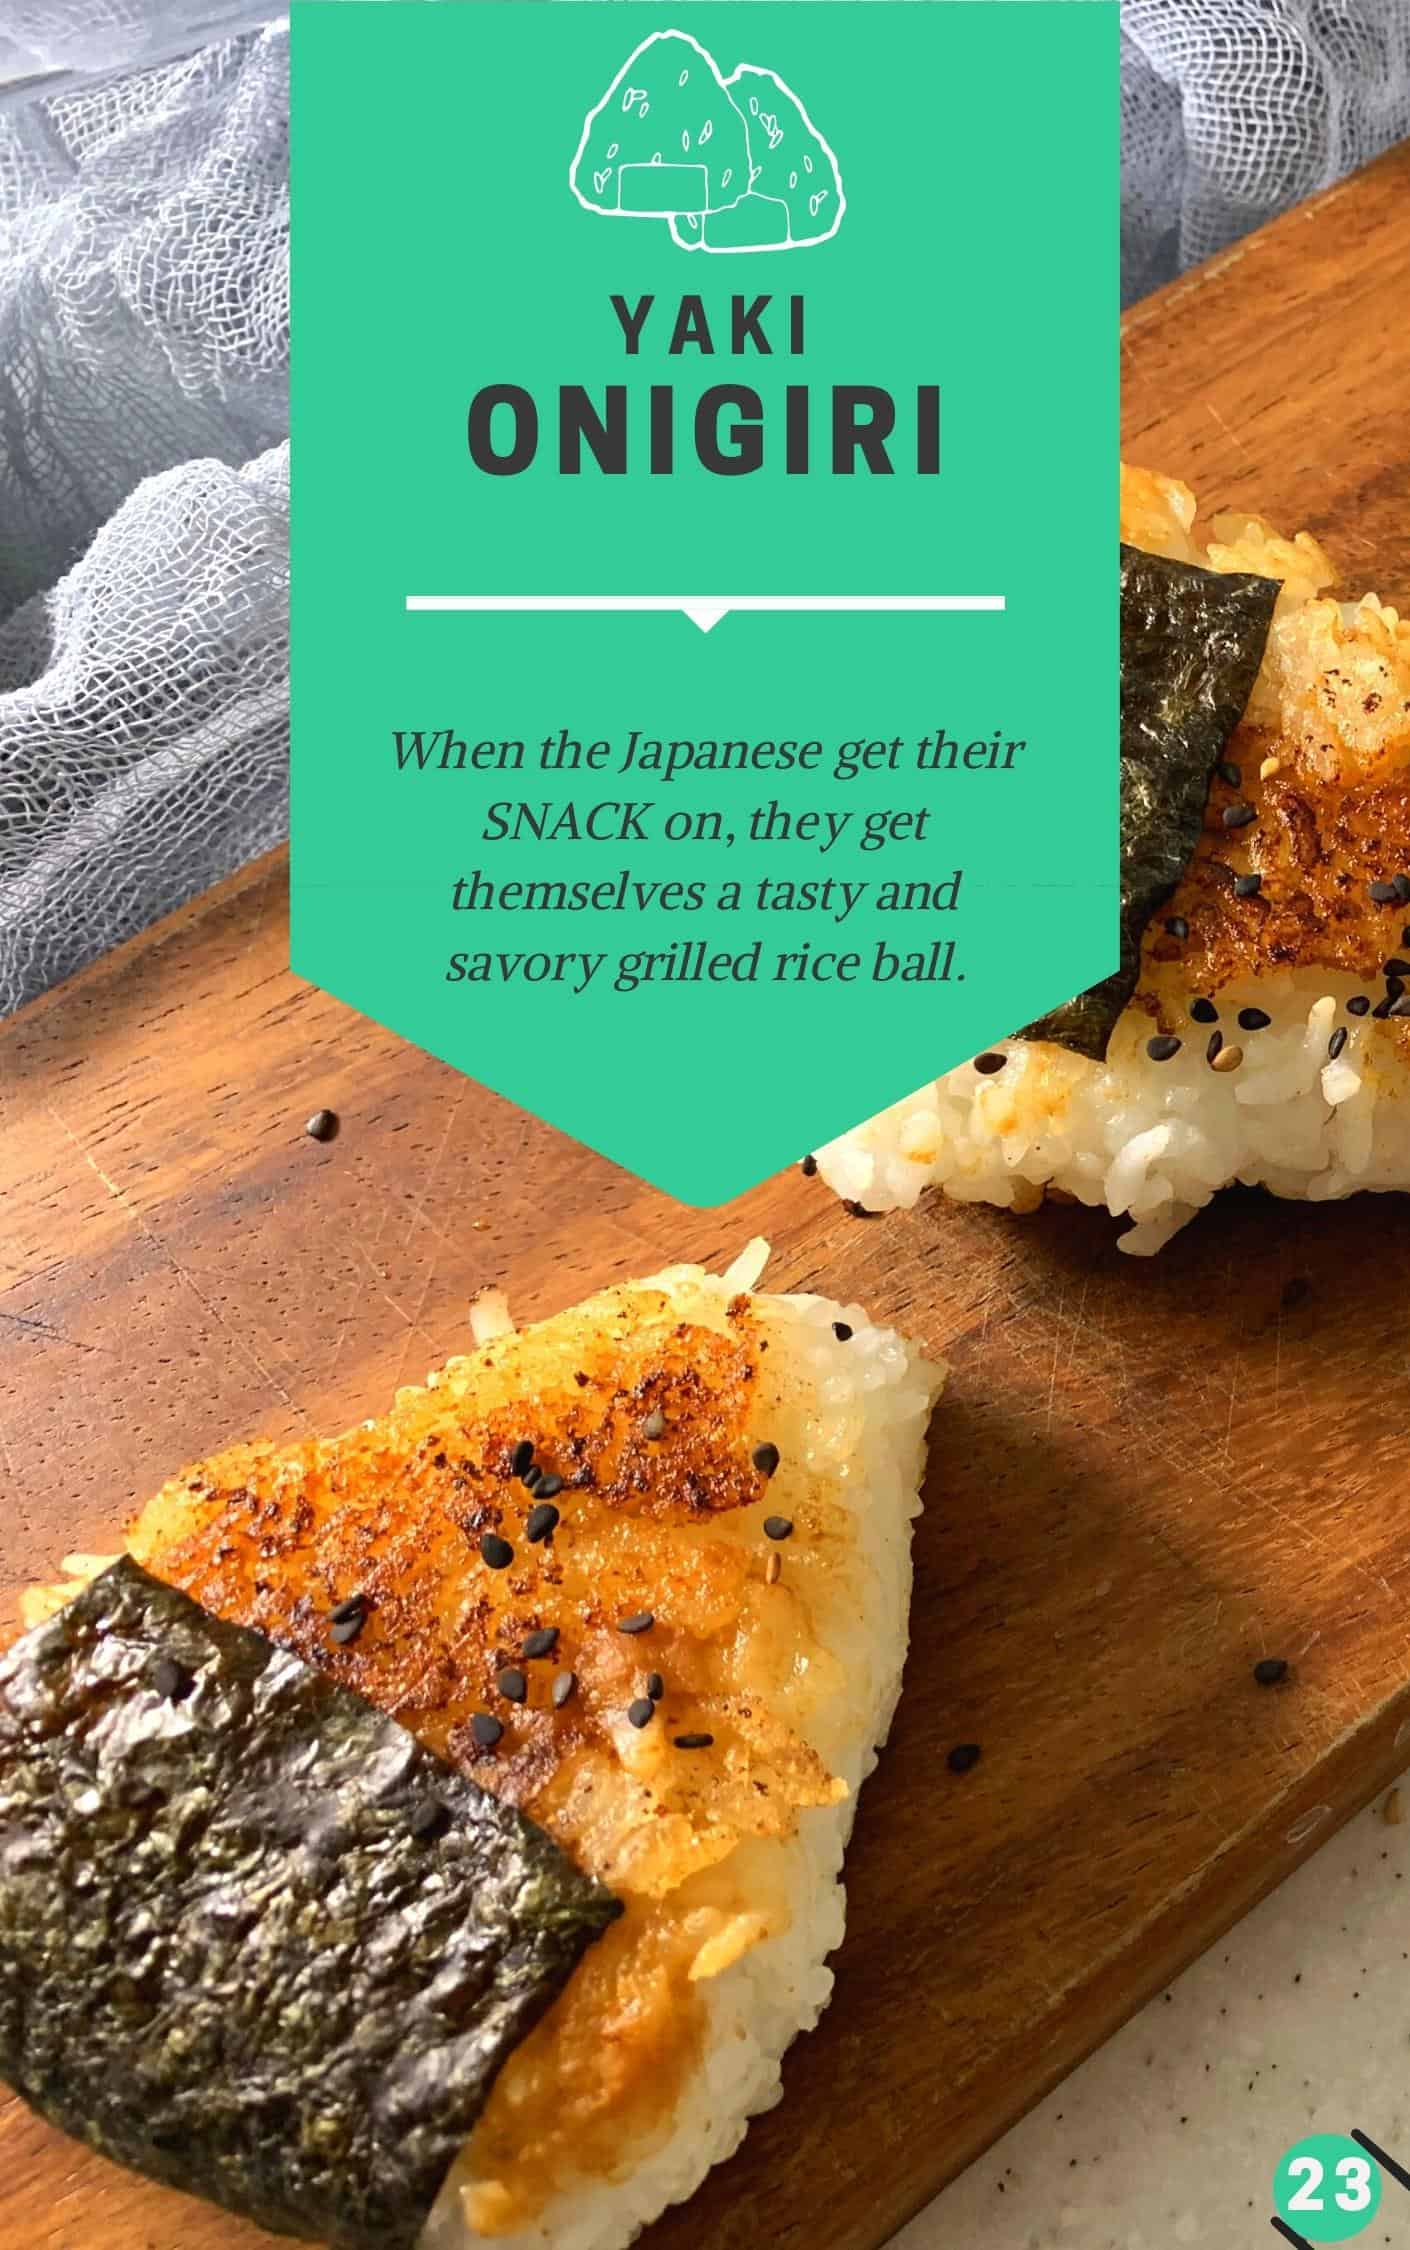 Yaki onigiri recipe